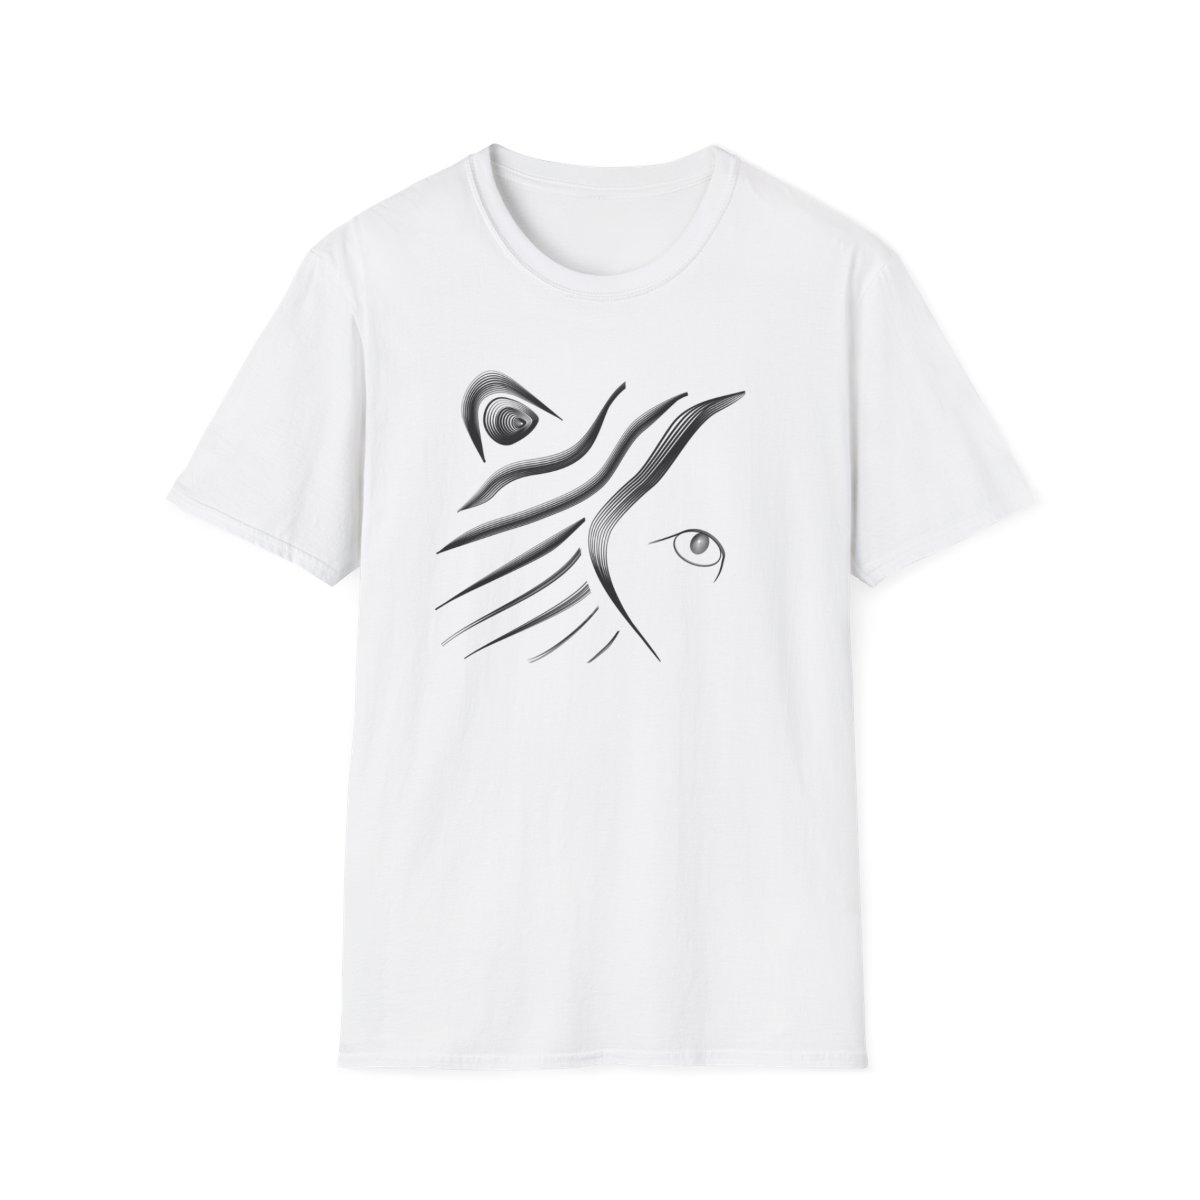 LION - Unisex Softstyle T-Shirt product main image